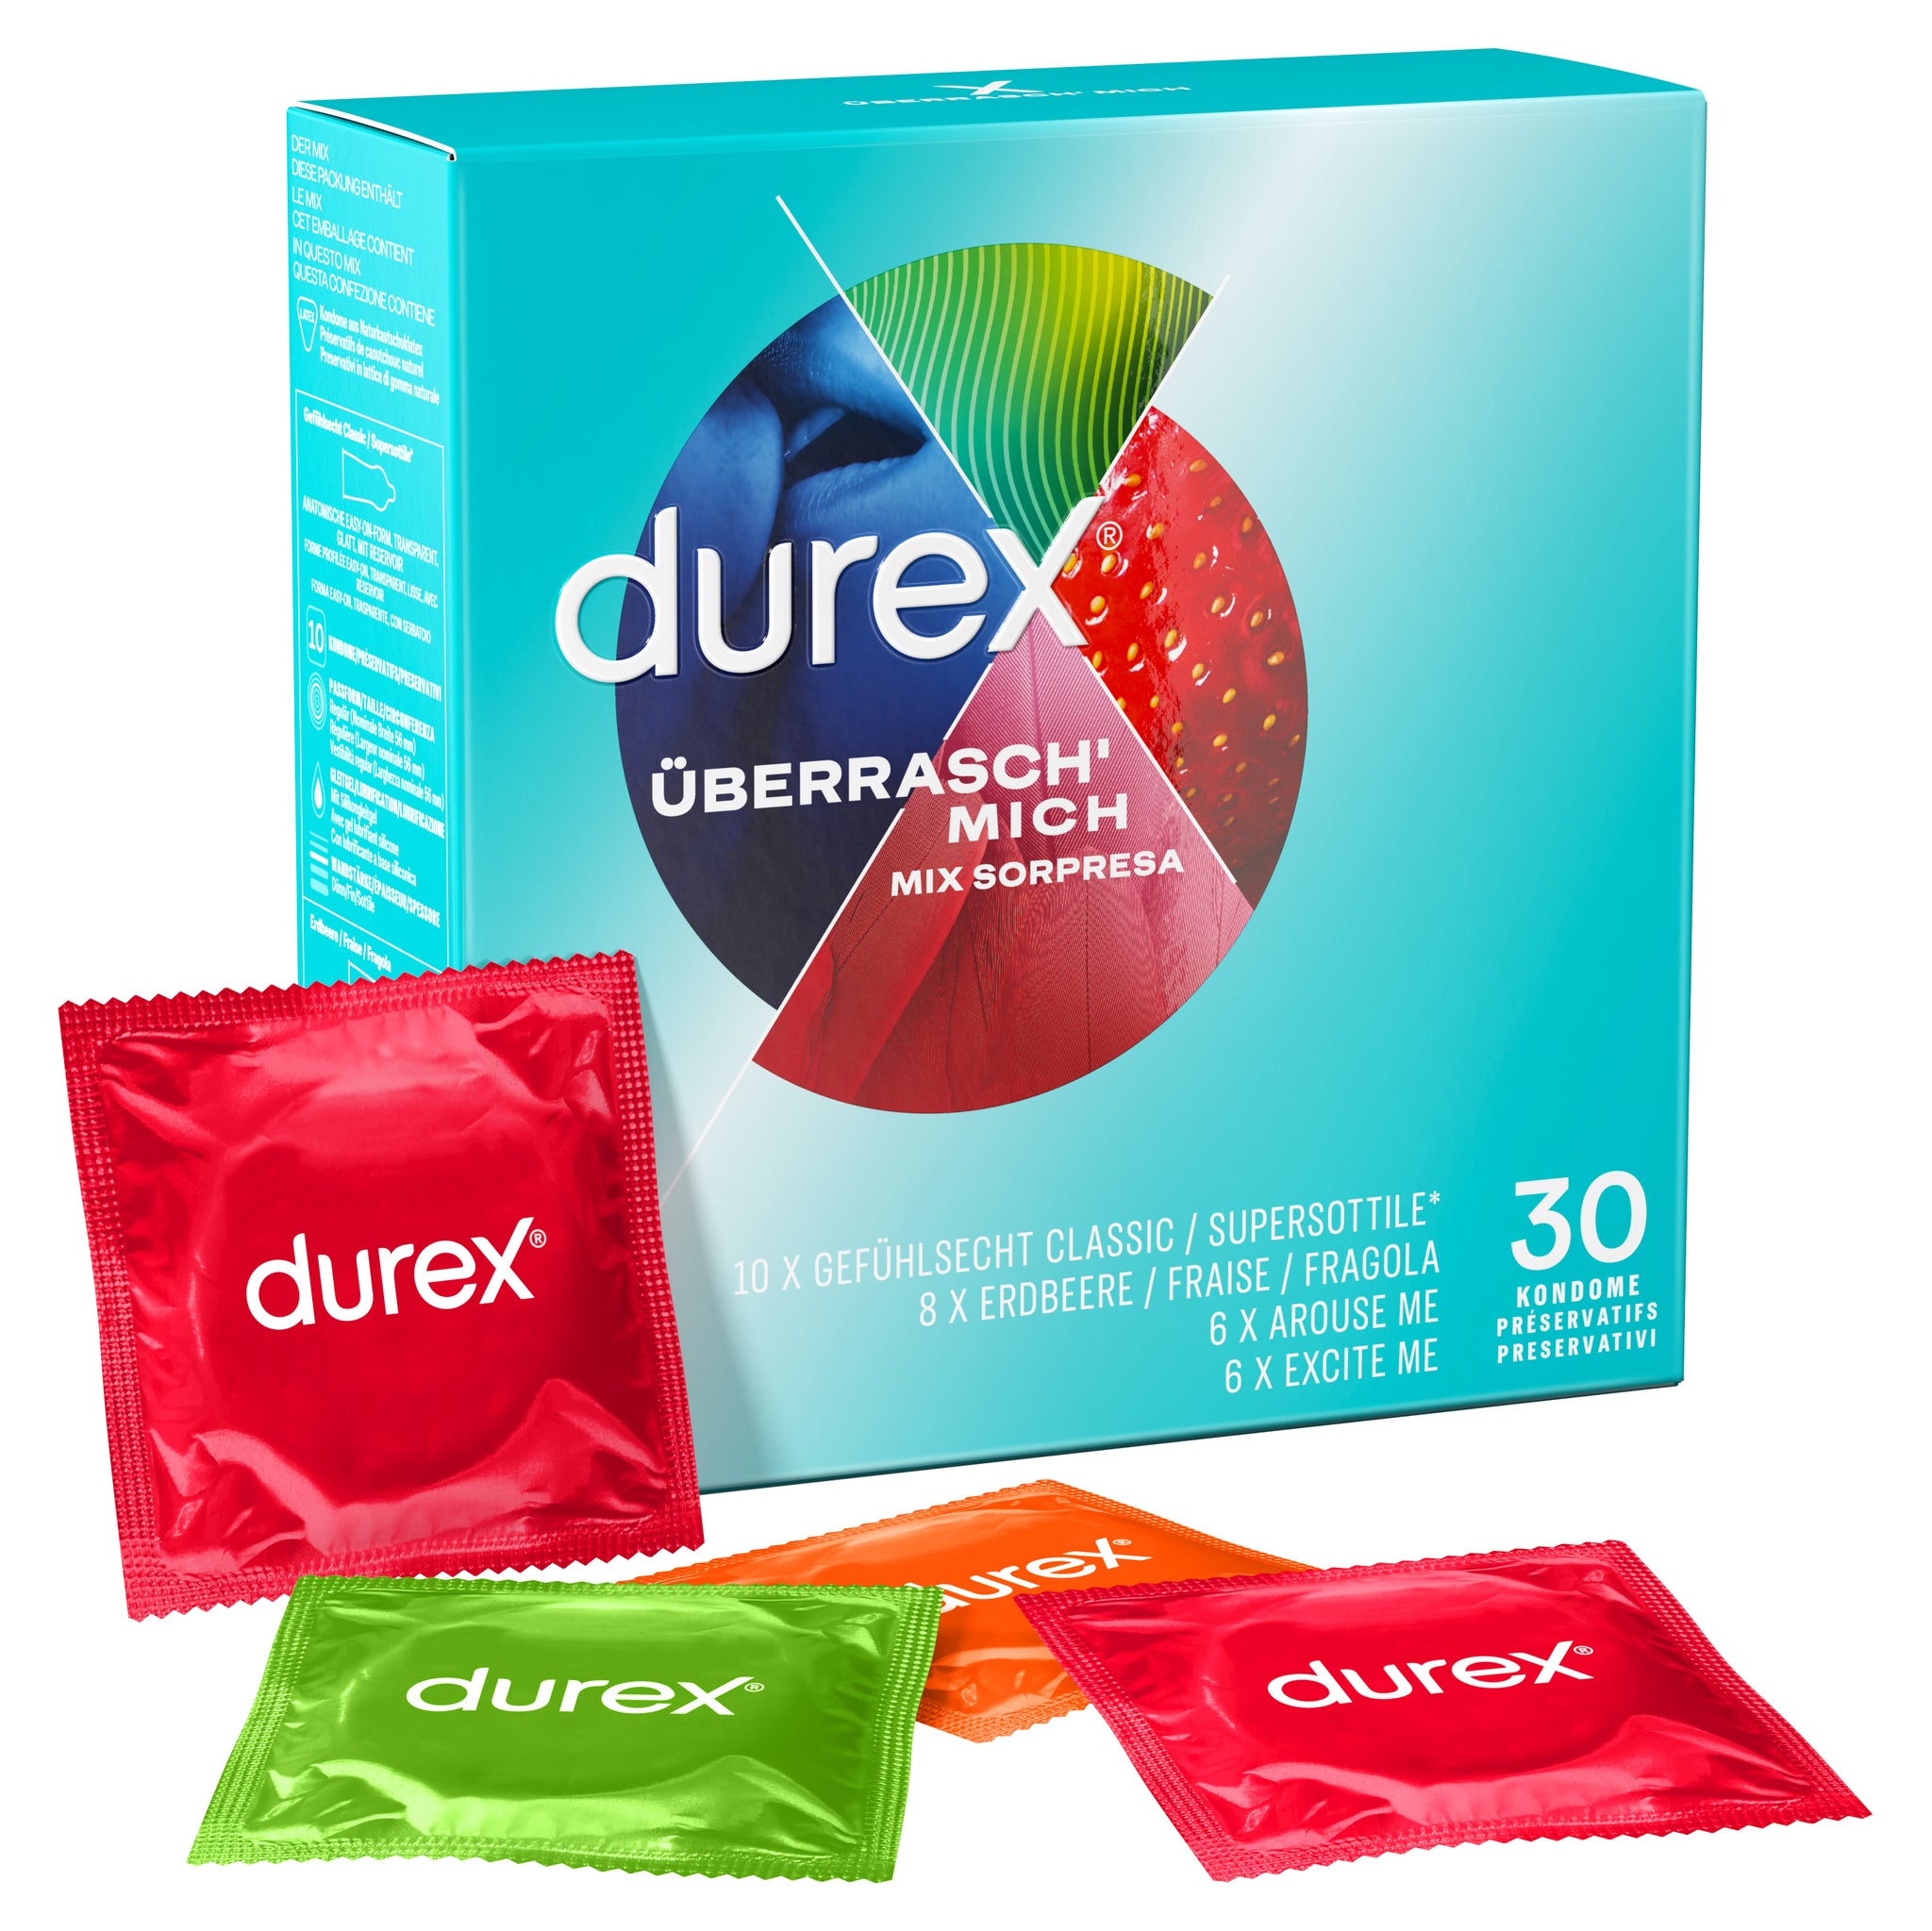 Durex Mix Sorpresa 30pz